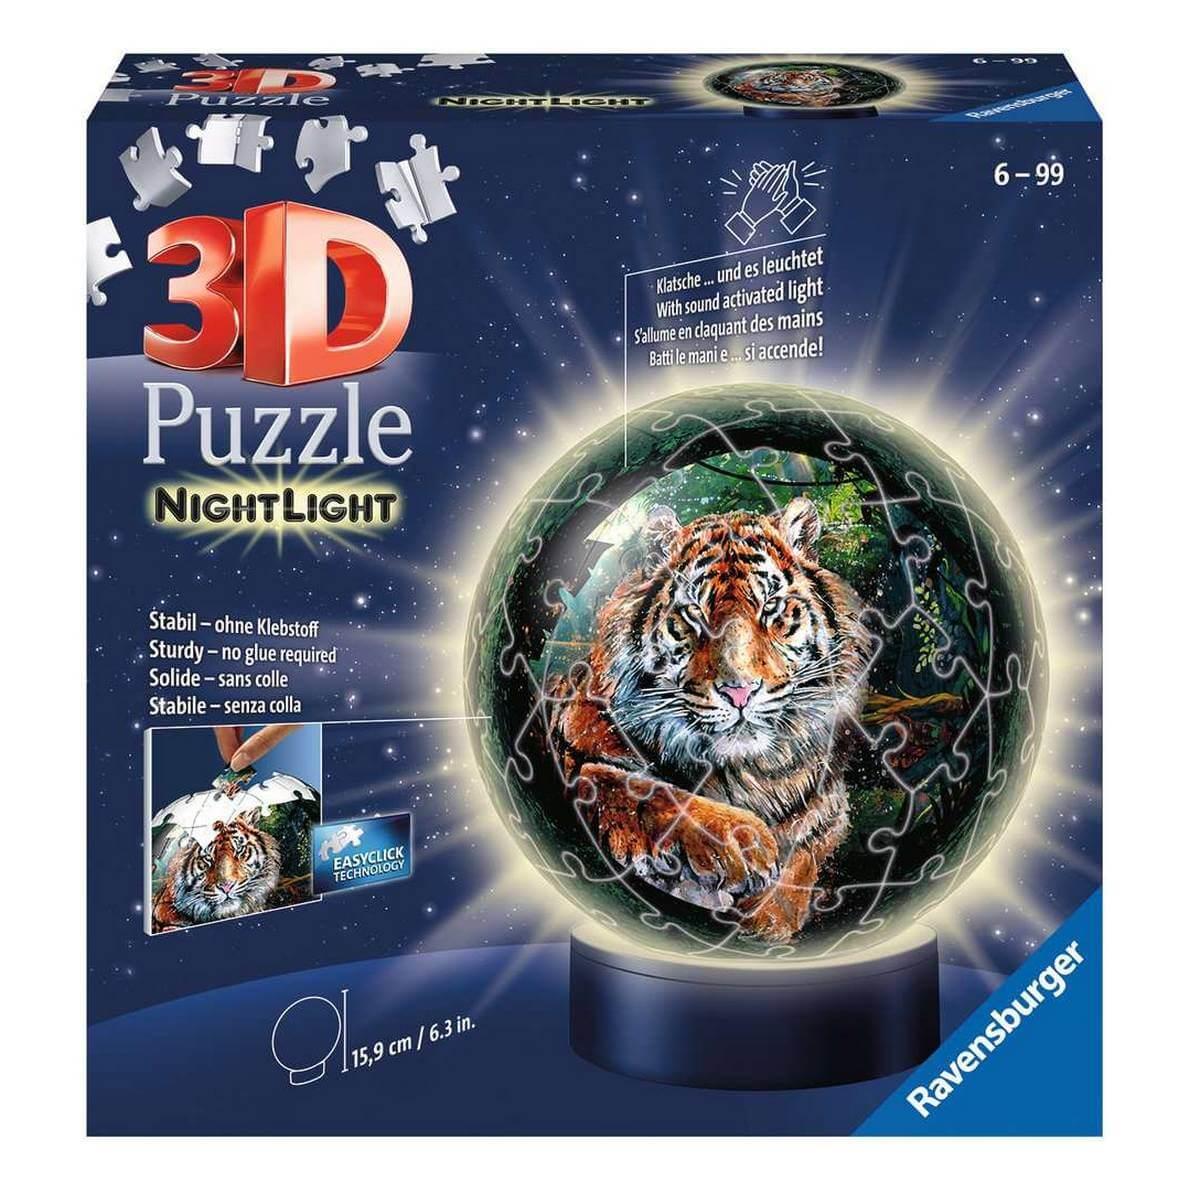 Puzzle 3D rond lumineux 72 pièces Ravensburger : King Jouet, Puzzles 3D  Ravensburger - Puzzles